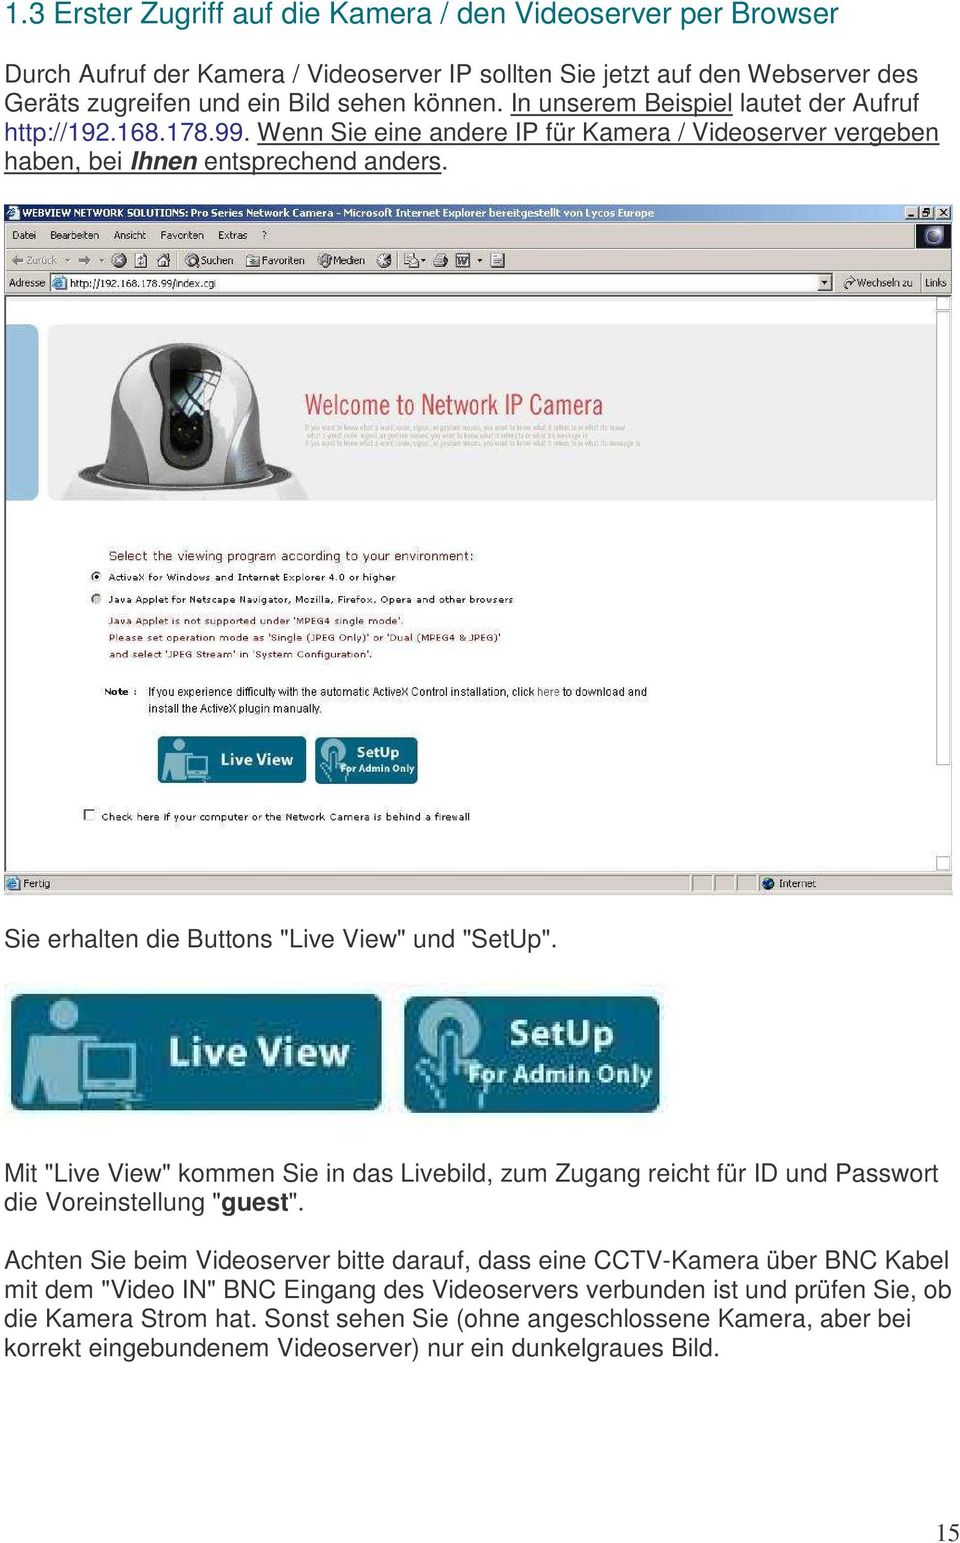 Sie erhalten die Buttons "Live View" und "SetUp". Mit "Live View" kommen Sie in das Livebild, zum Zugang reicht für ID und Passwort die Voreinstellung "guest".